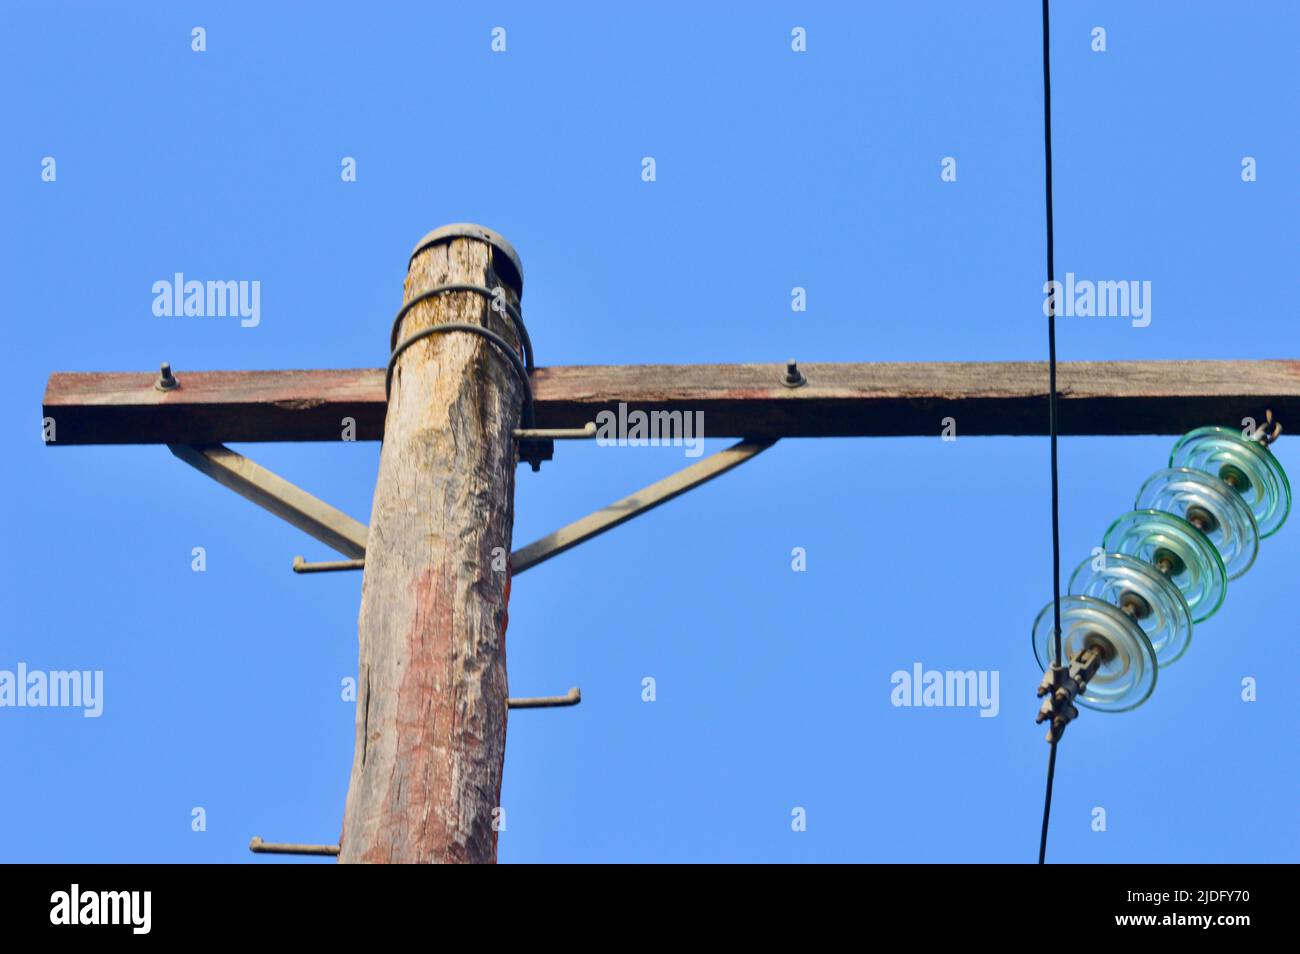 Ein hölzerner Strommast gegen einen blauen Himmel Stockfoto